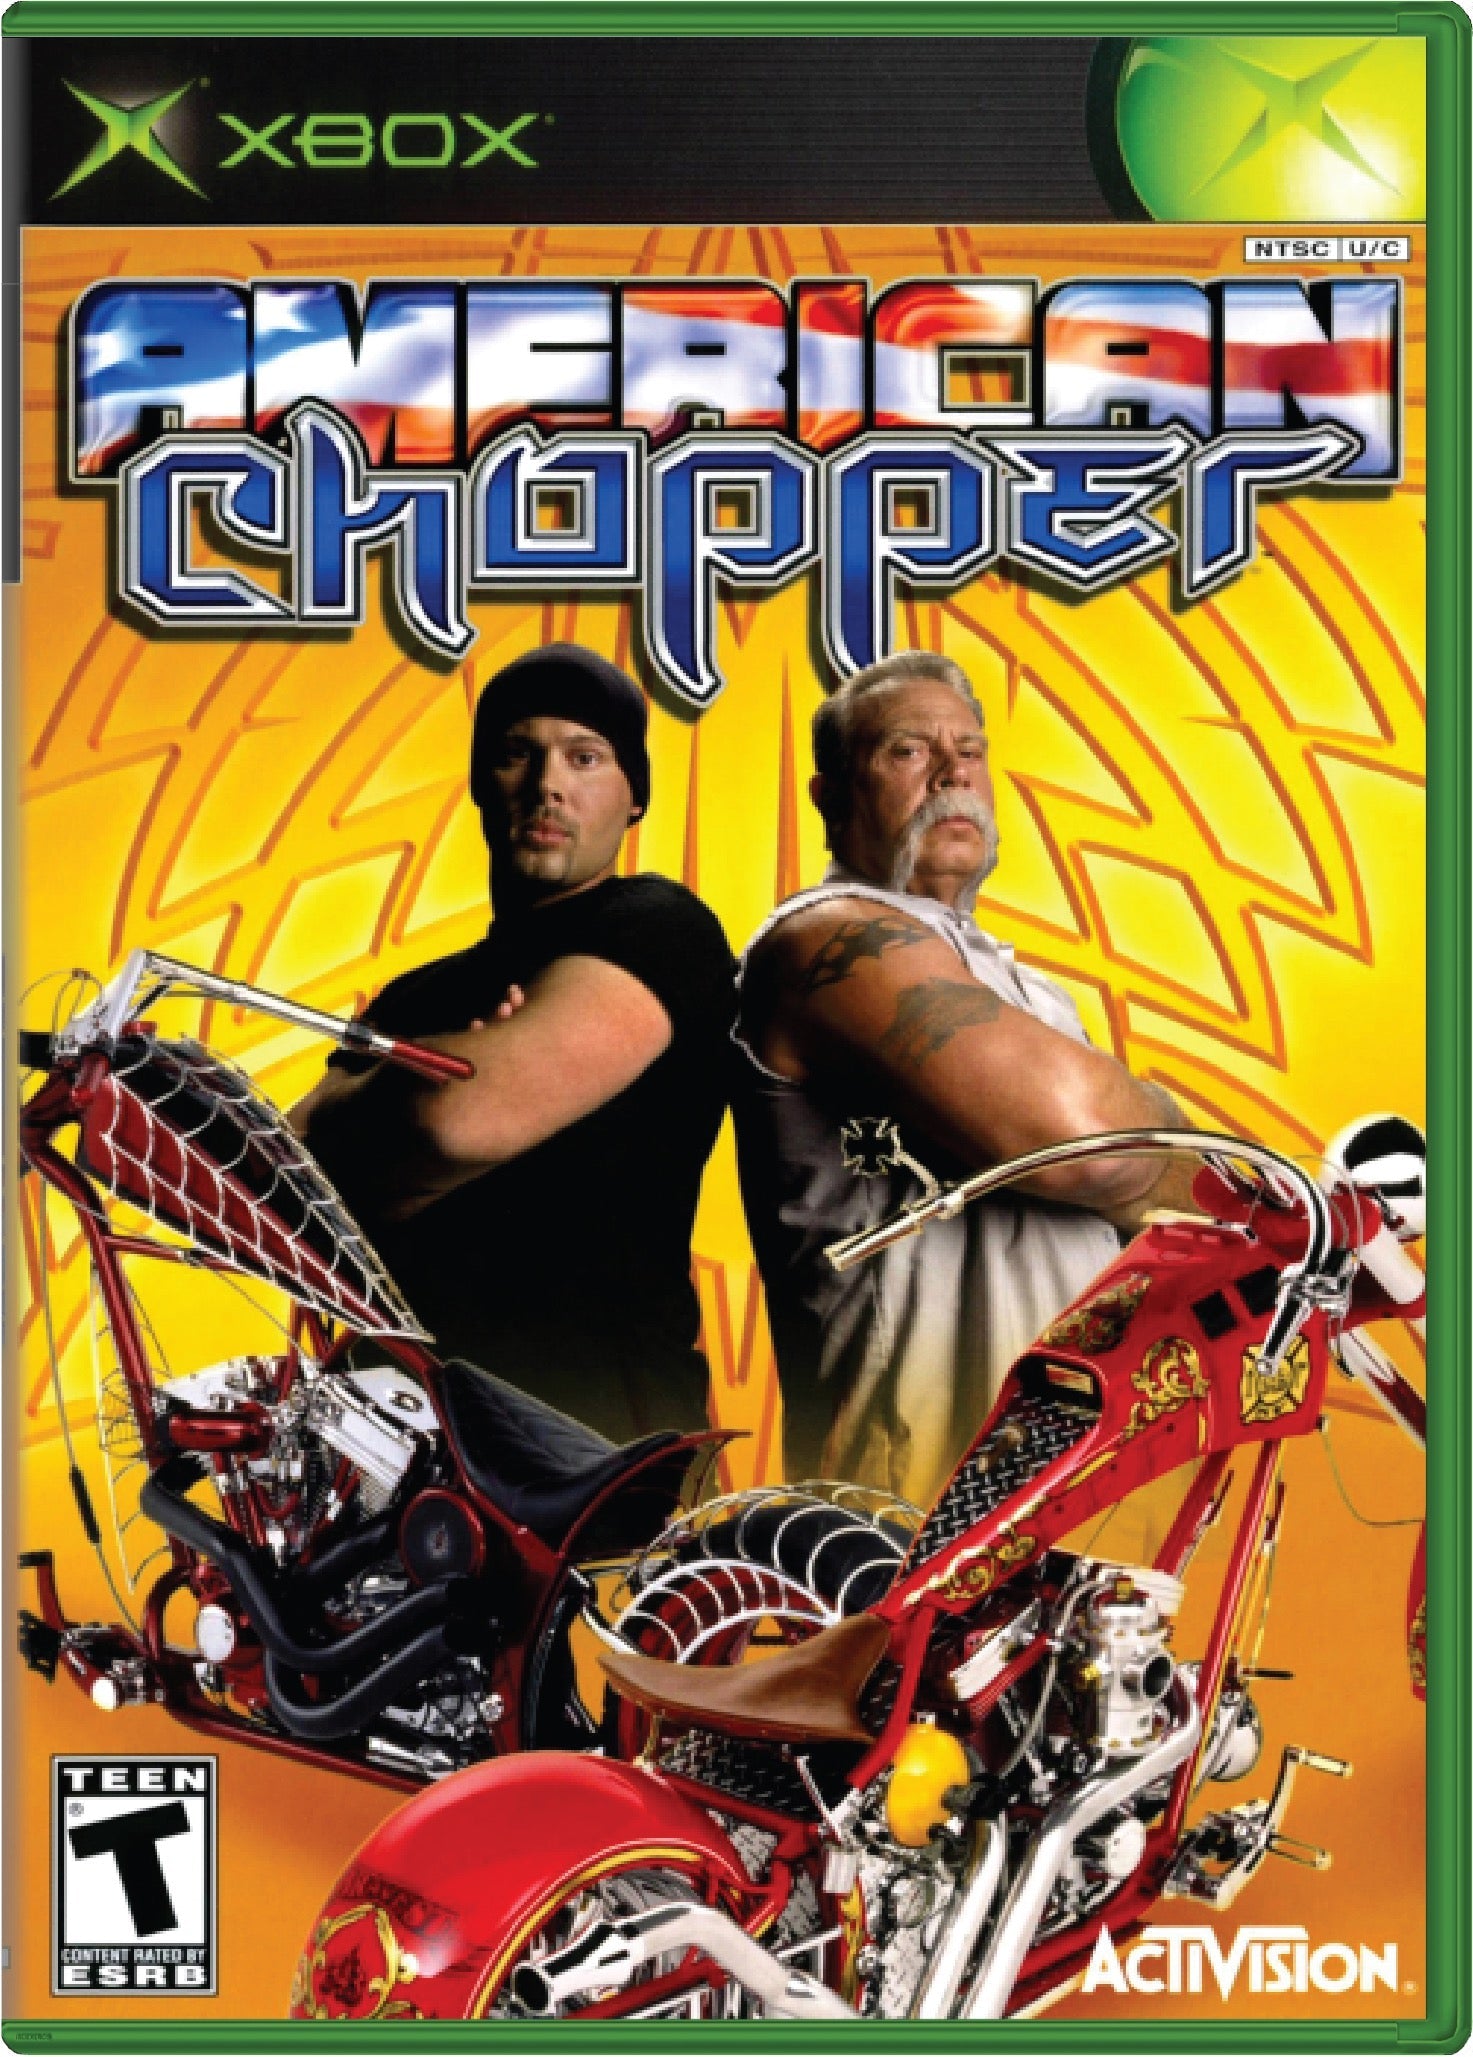 American Chopper Cover Art